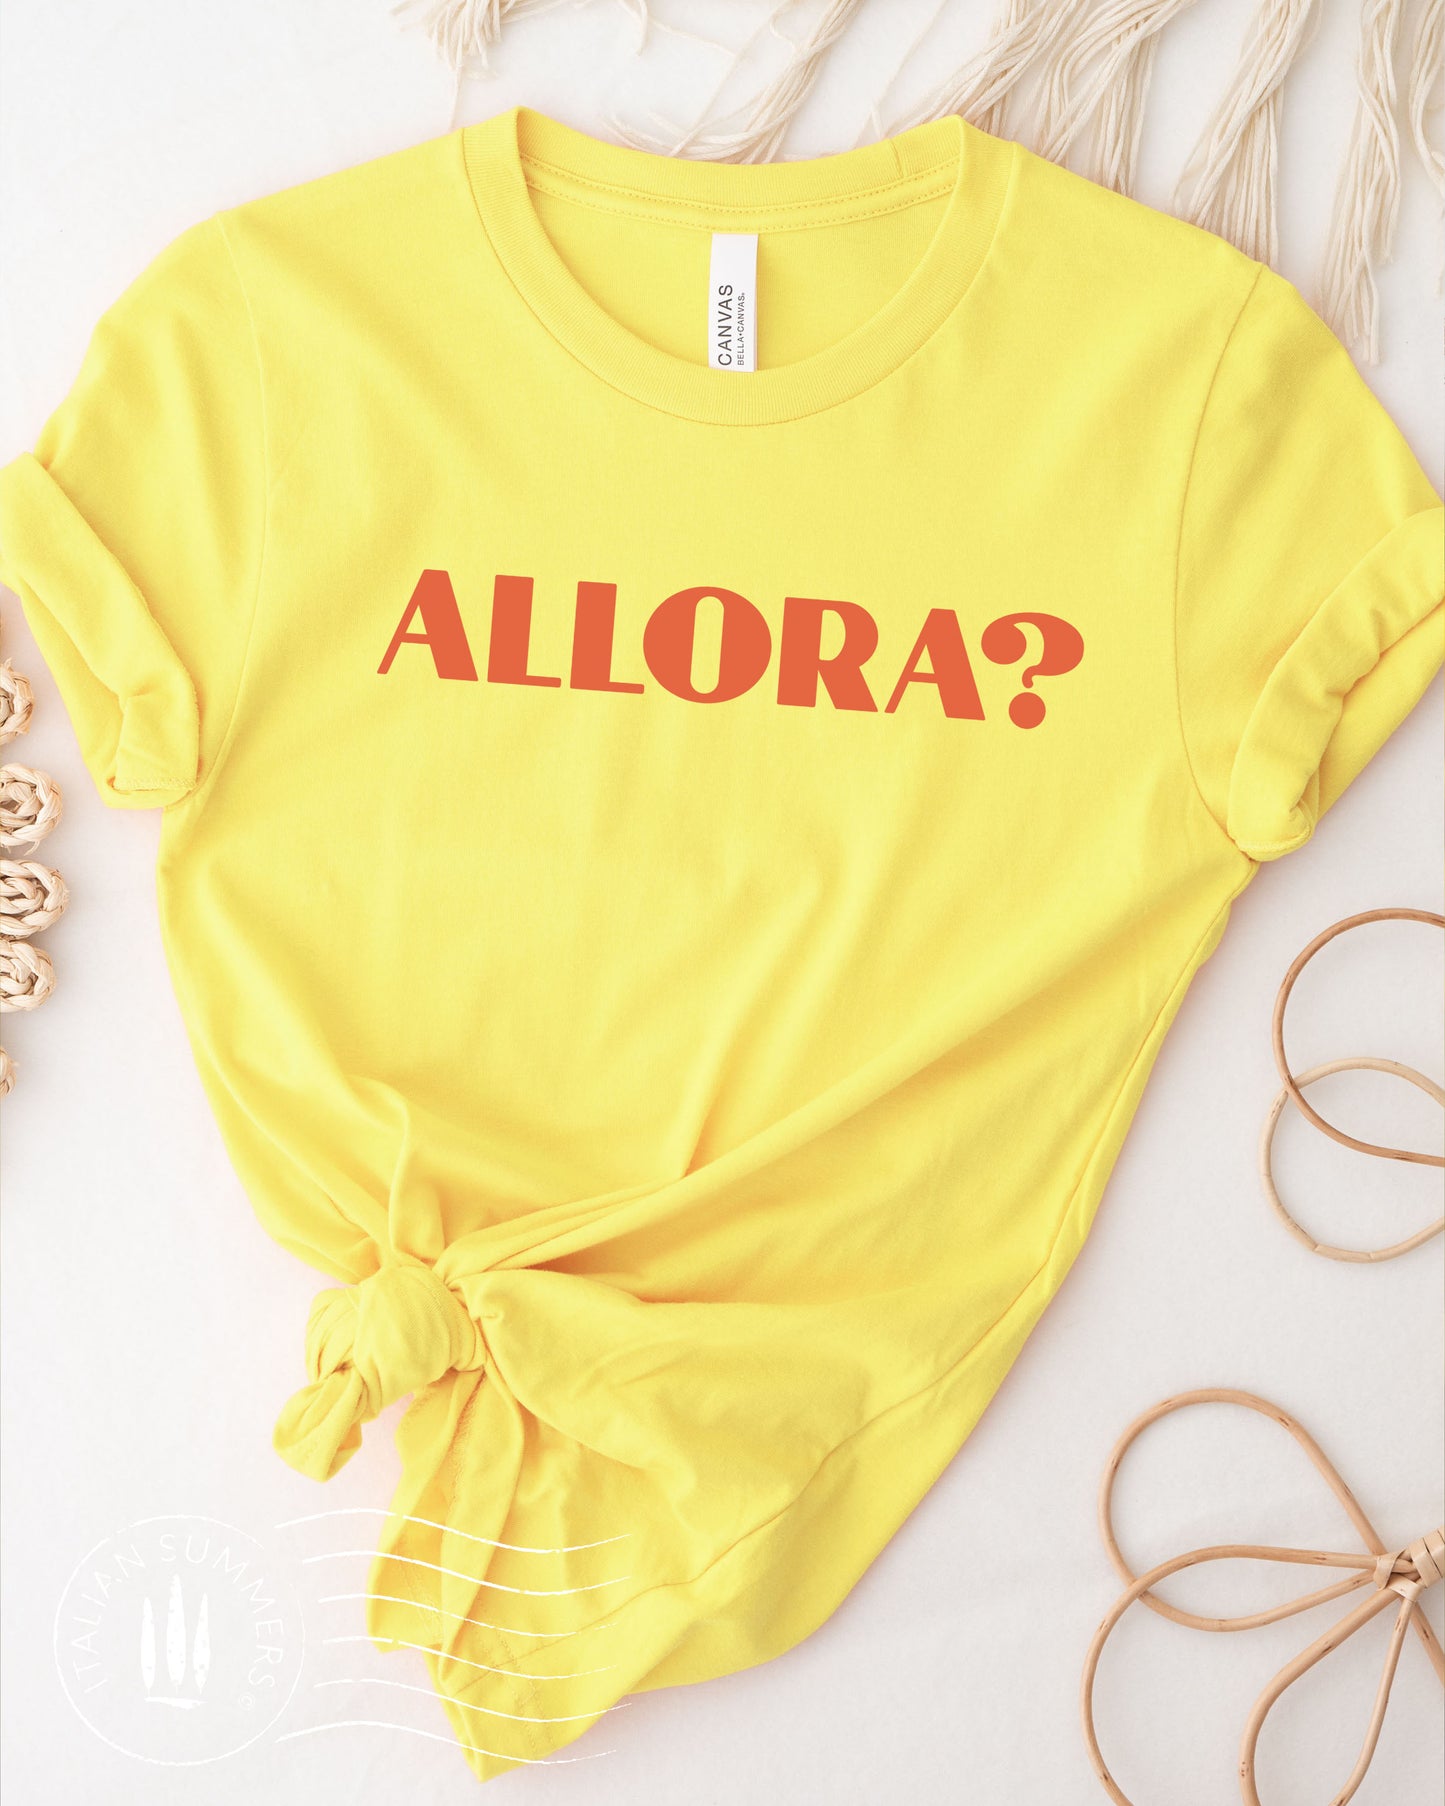 T Shirt ALLORA? by talian Summers, Italy shirt, Italy team, Italian words, Italian quote, Italy theme, Italy traveler, Italy lover, Ciao